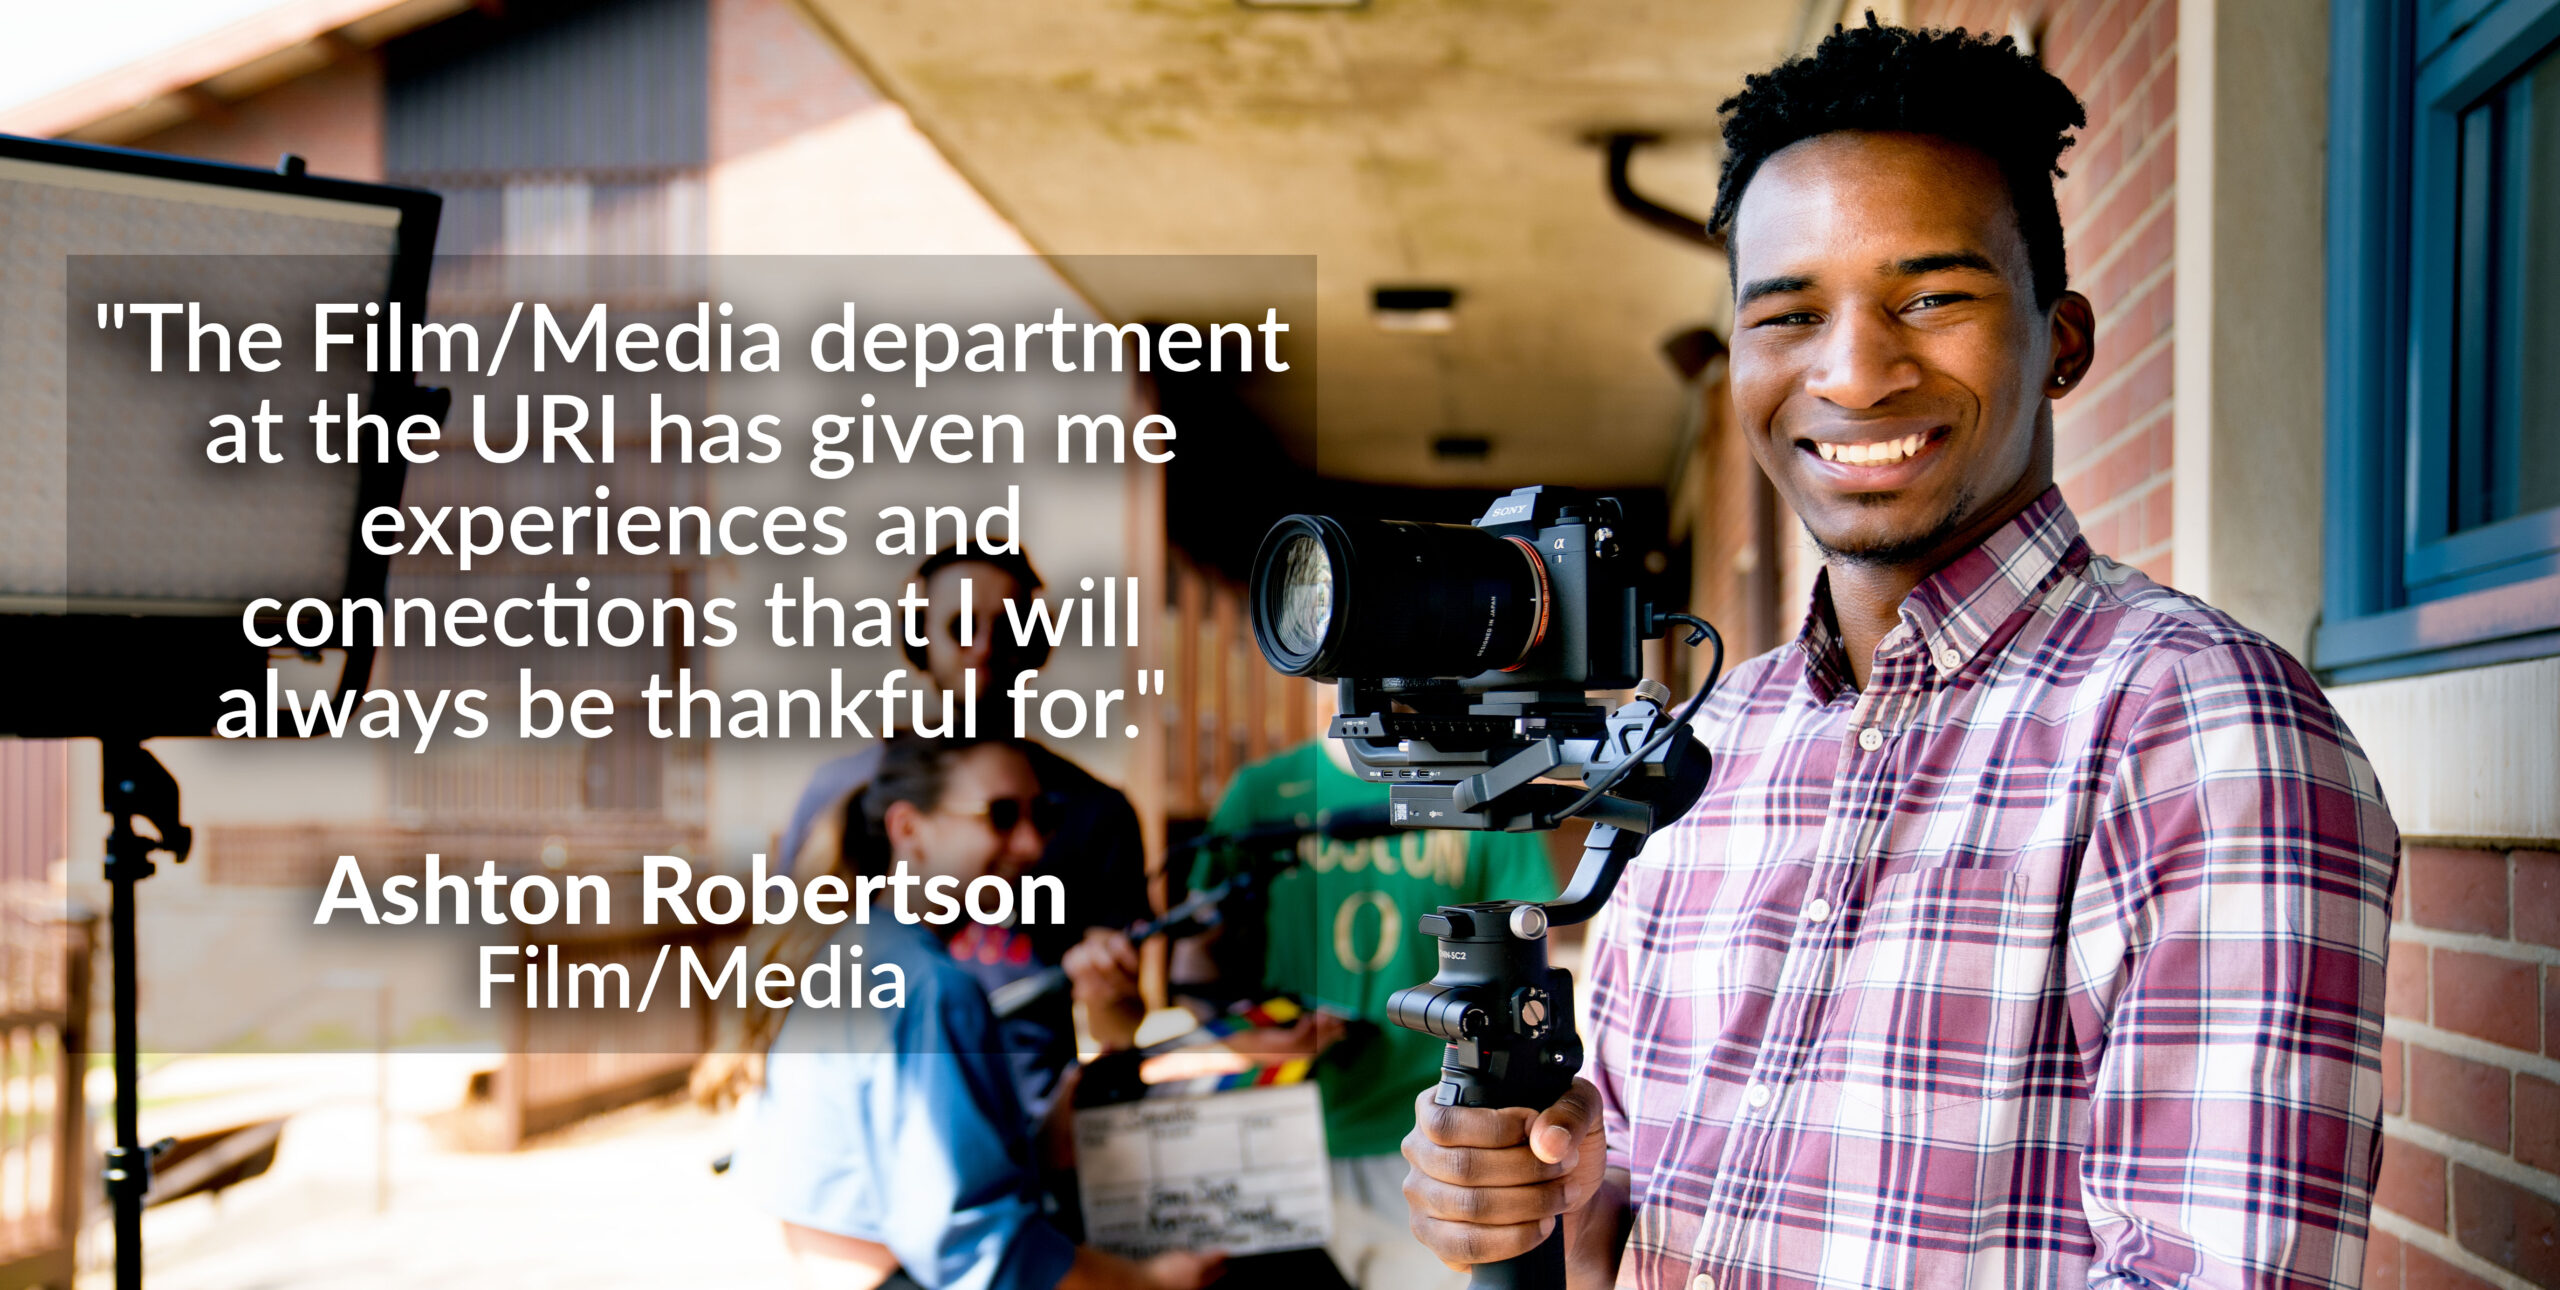 电影/媒体专业学生阿什顿·罗伯逊的照片，引用“URI的电影/媒体部门给了我经验和联系，我将永远感激。”